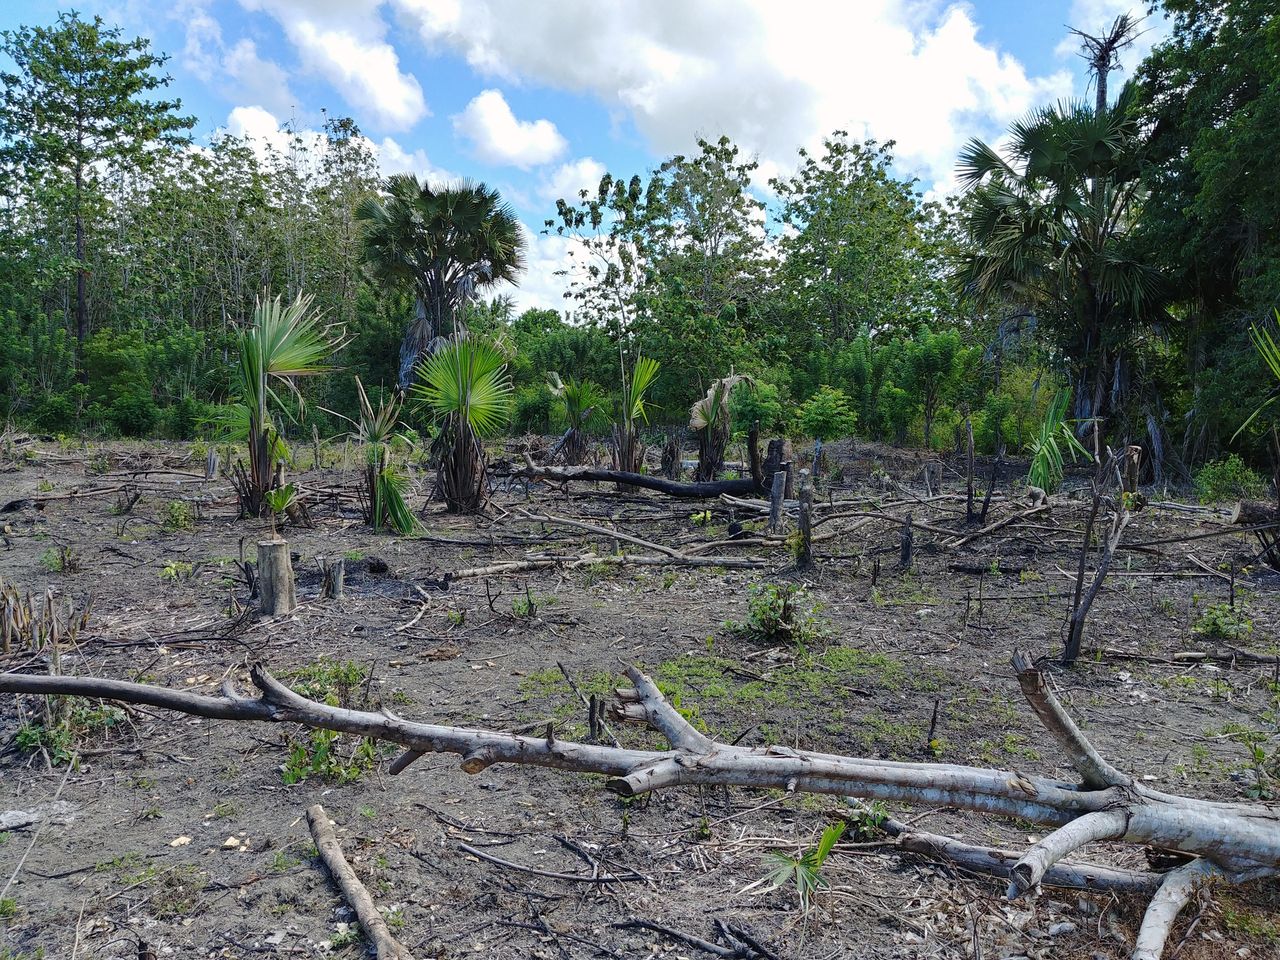 Syntetyczny olej palmowy. Czy uratuje lasy tropikalne przez zniszczeniem? - Las tropikalny zniszczony przez wycinkę drzew pod produkcję oleju palmowego. 